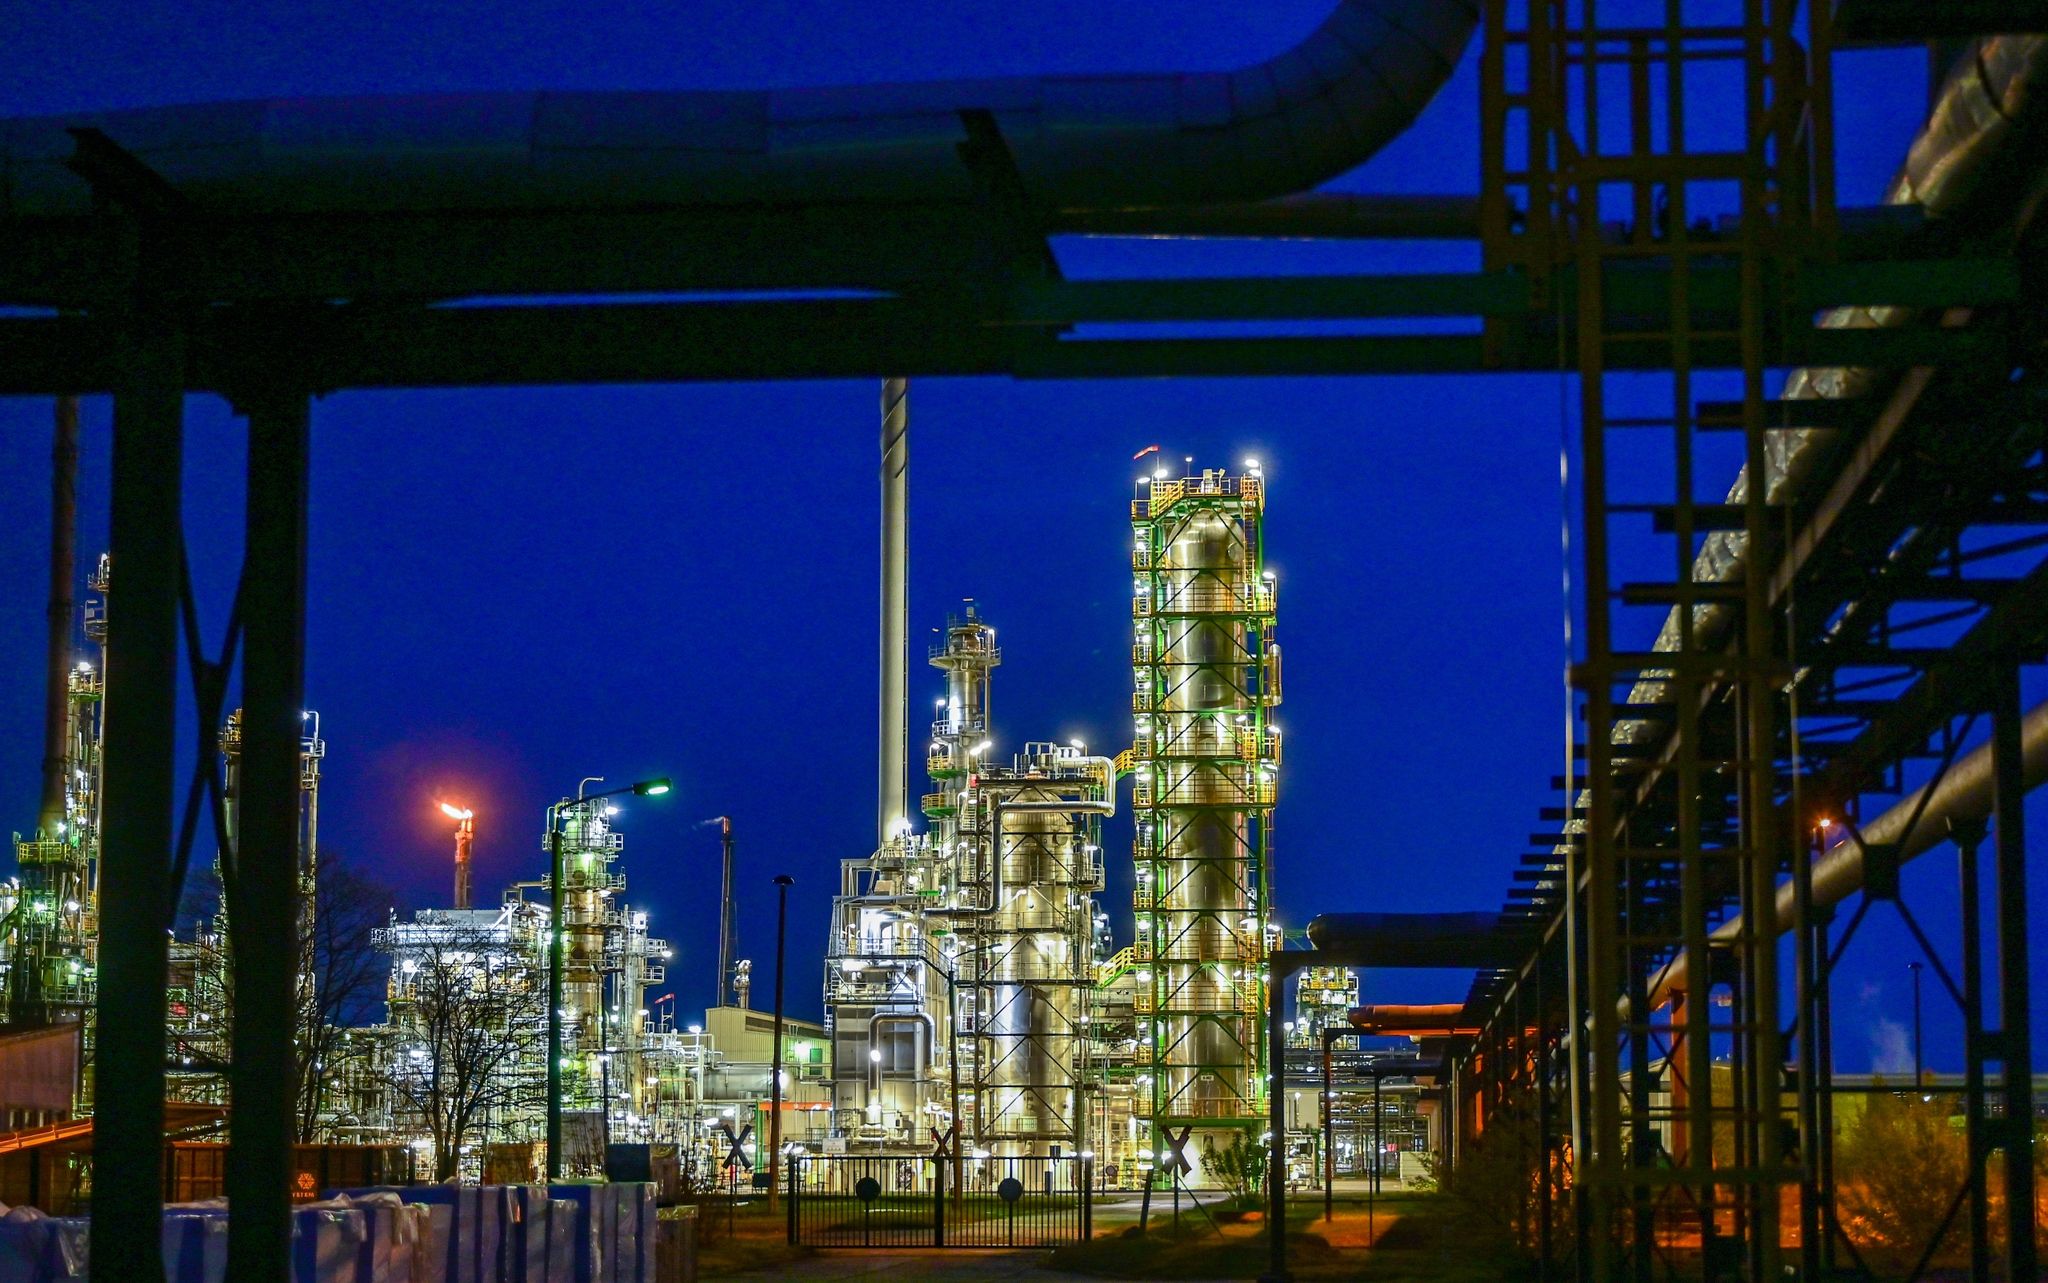 Die PCK-Erdölraffinerie im ostdeutschen Schwedt verarbeitet nach eigenen Angaben jährlich 12 Millionen Tonnen Rohöl und gehört damit zu den größten Verarbeitungsstandorten in Deutschland.